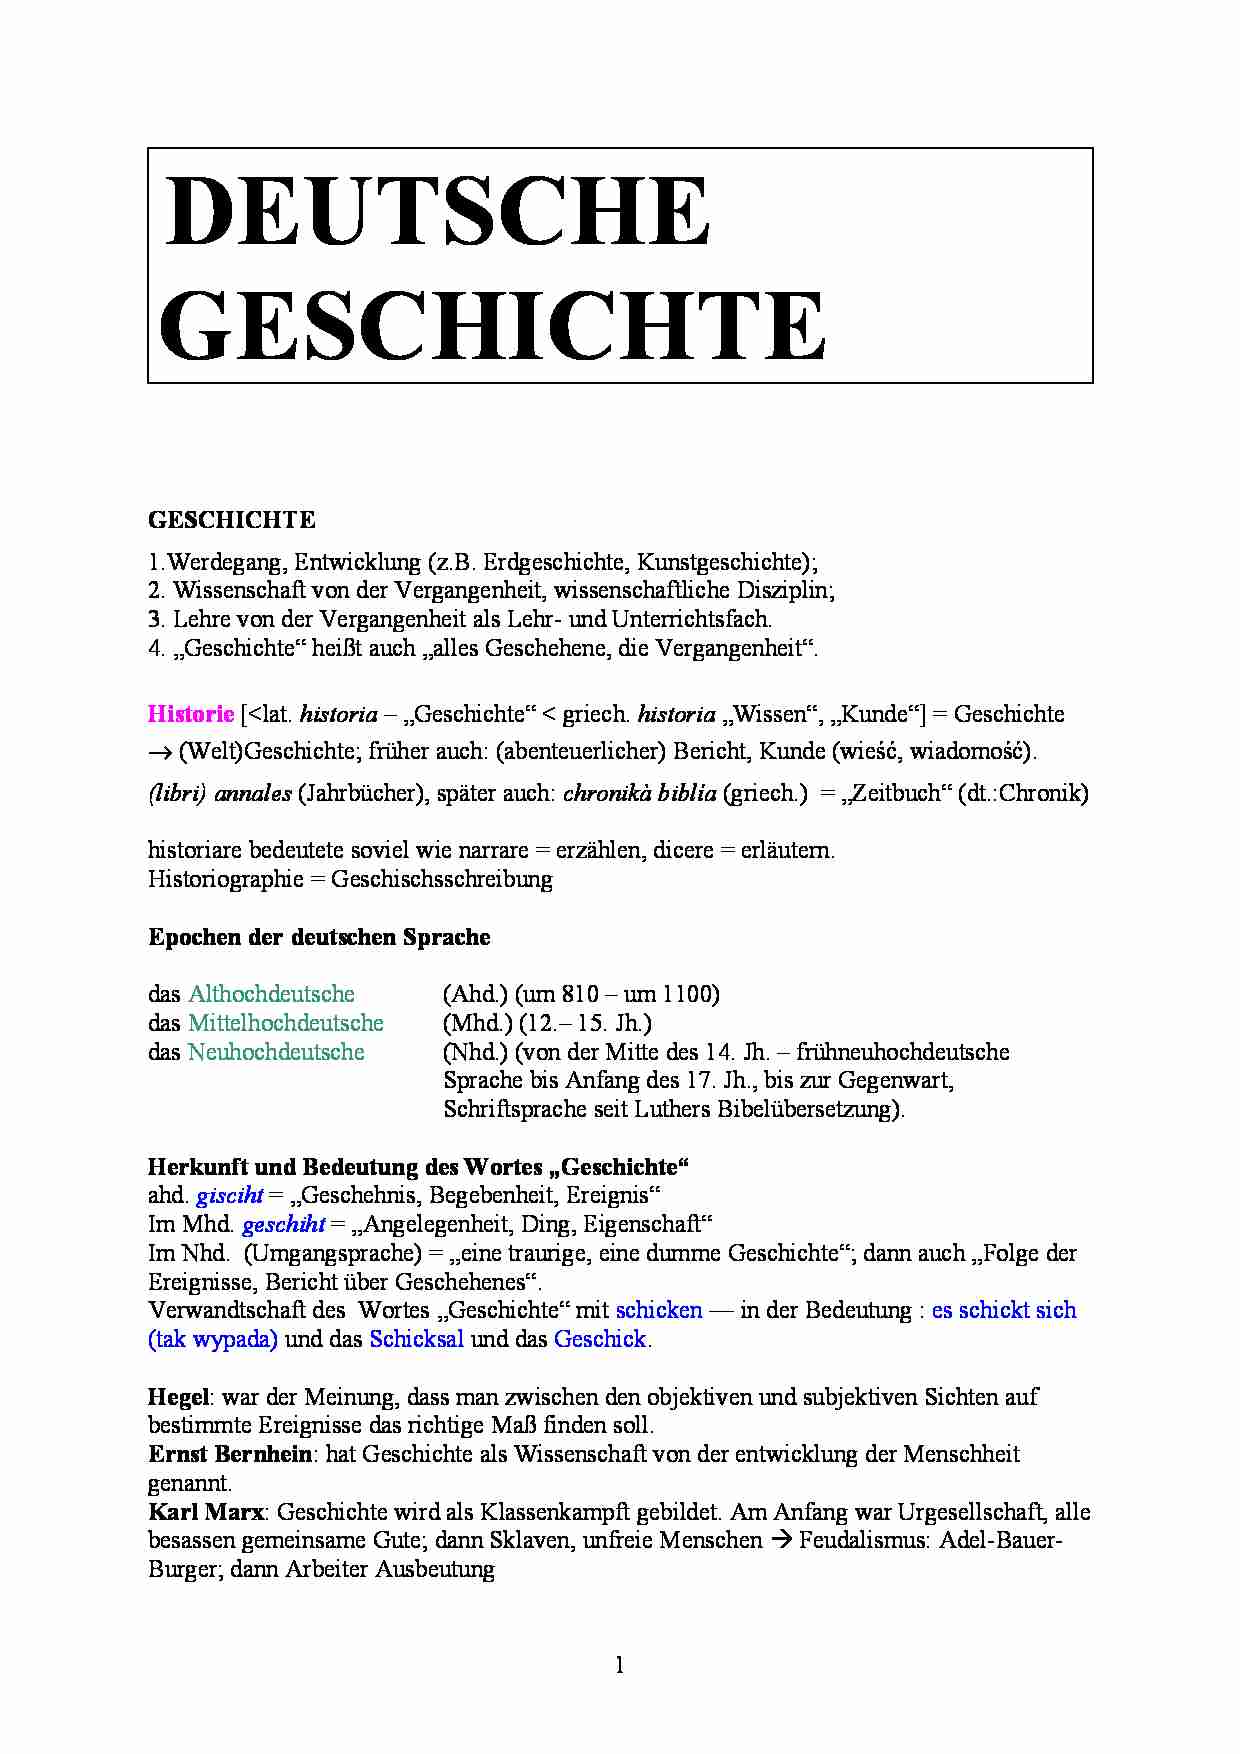 Deutsche Geschichte - opracowanie - strona 1